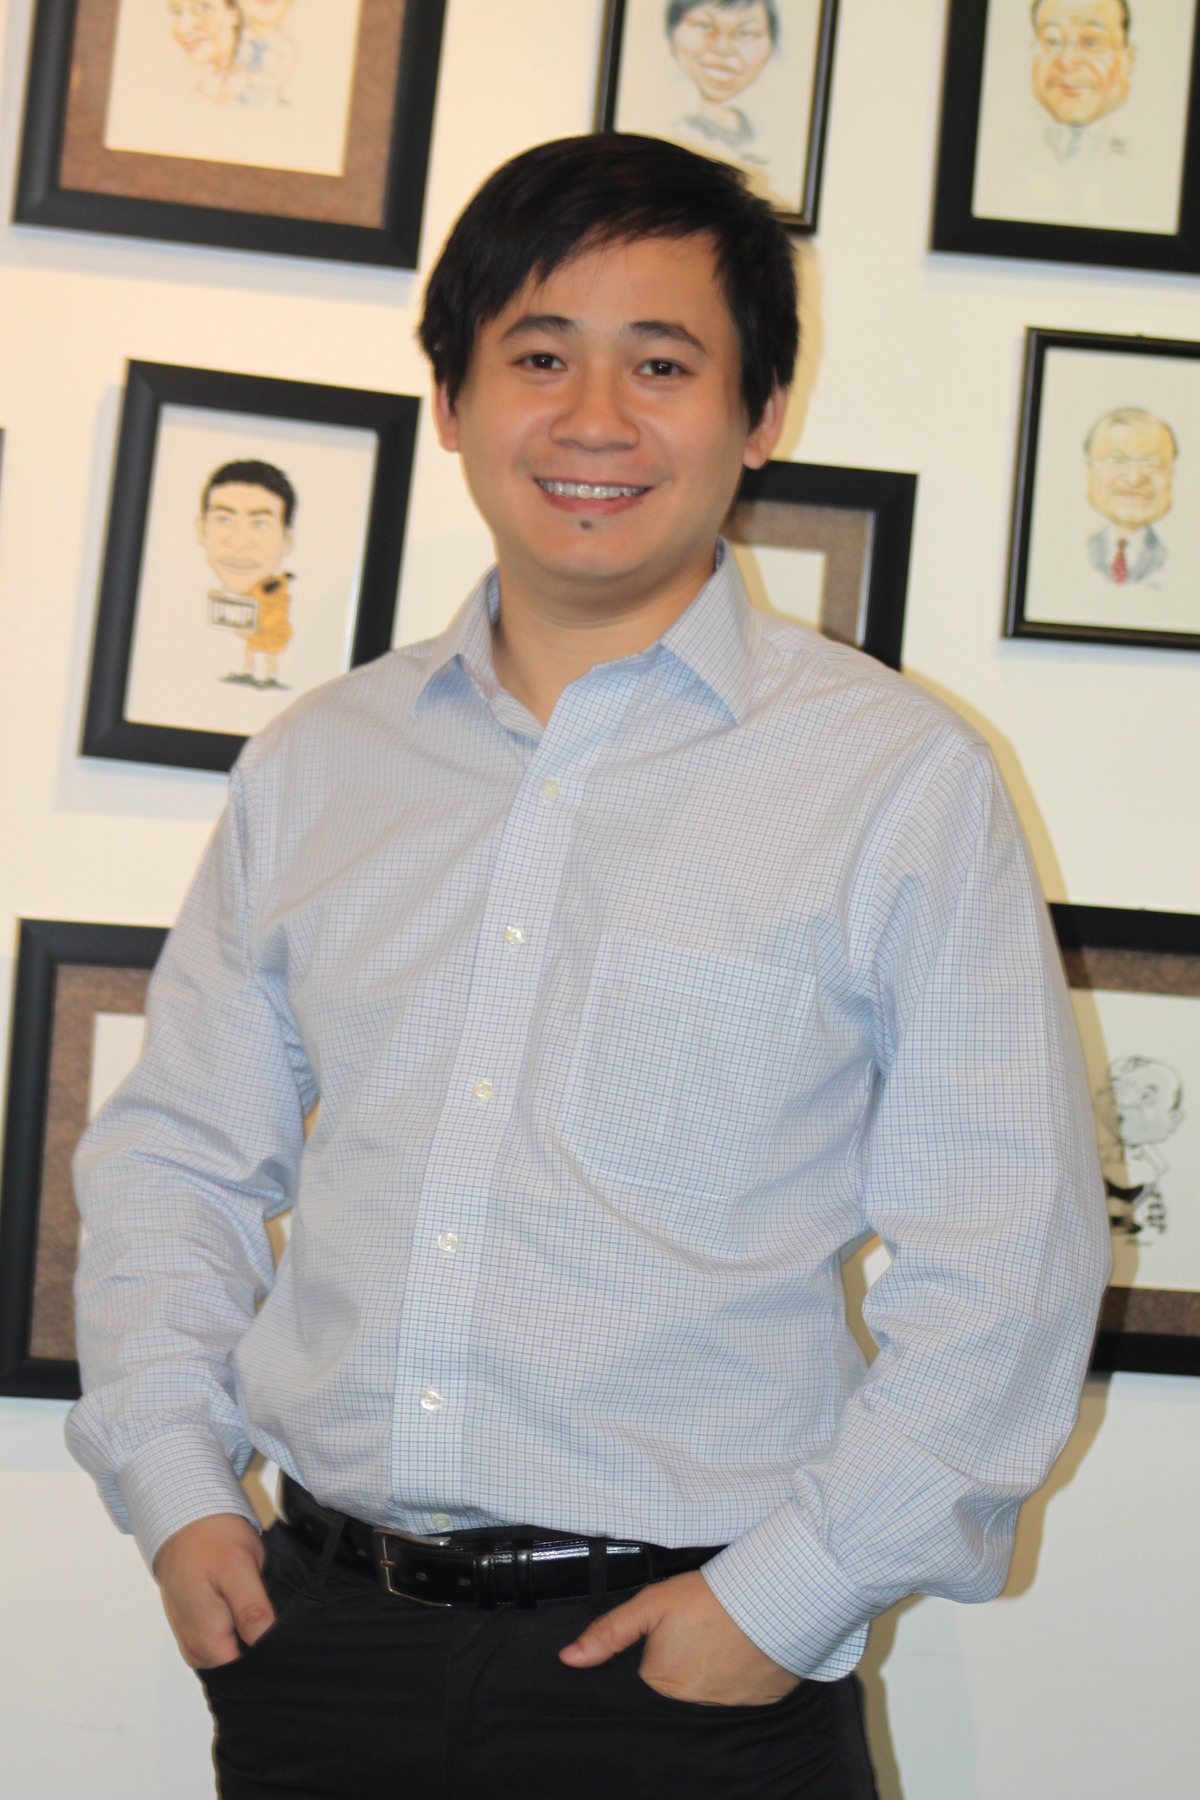 <p> Lê Hồng Việt - Giám đốc Công nghệ FPT Software. Anh là người đã góp phần xây dựng thành công nền tảng vững chắc cho FPT Software trong các công nghệ mới như Cloud, Mobility và Big Data.</p>